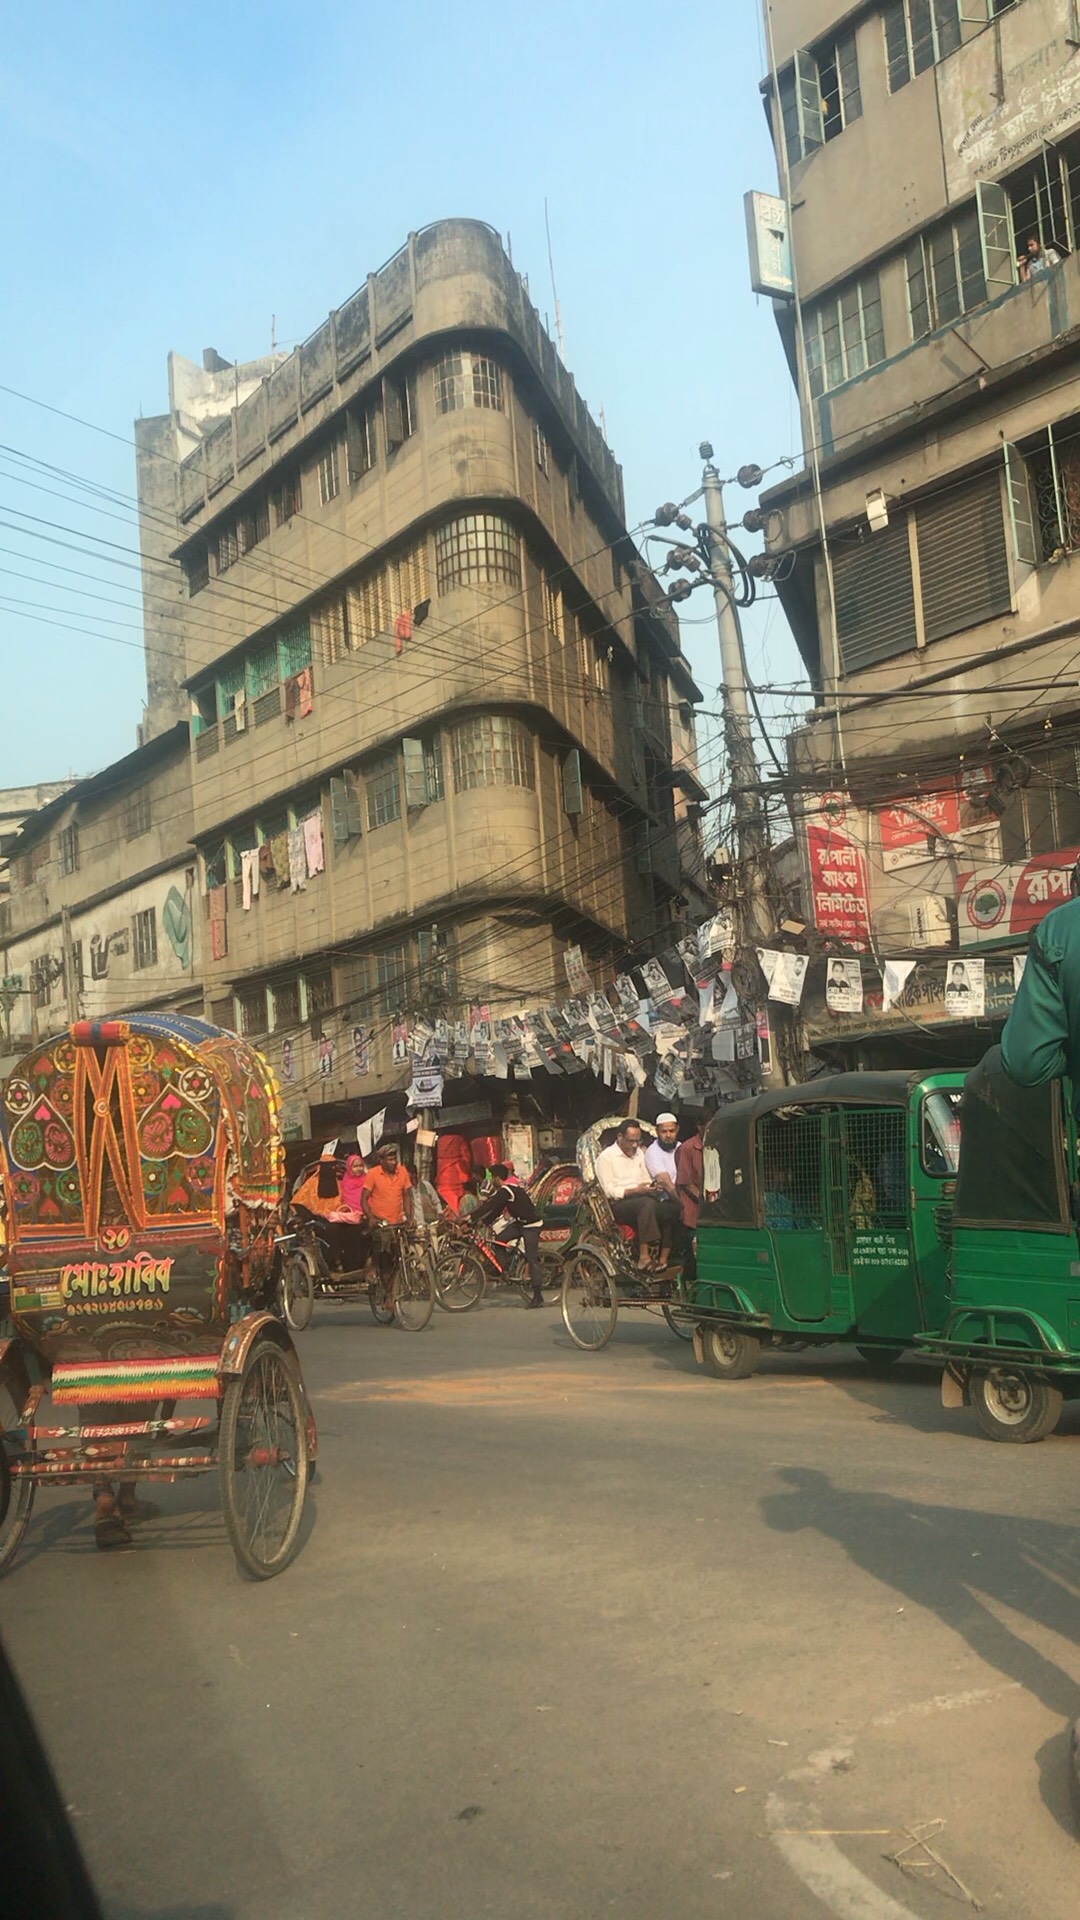 孟加拉国达卡街景图片